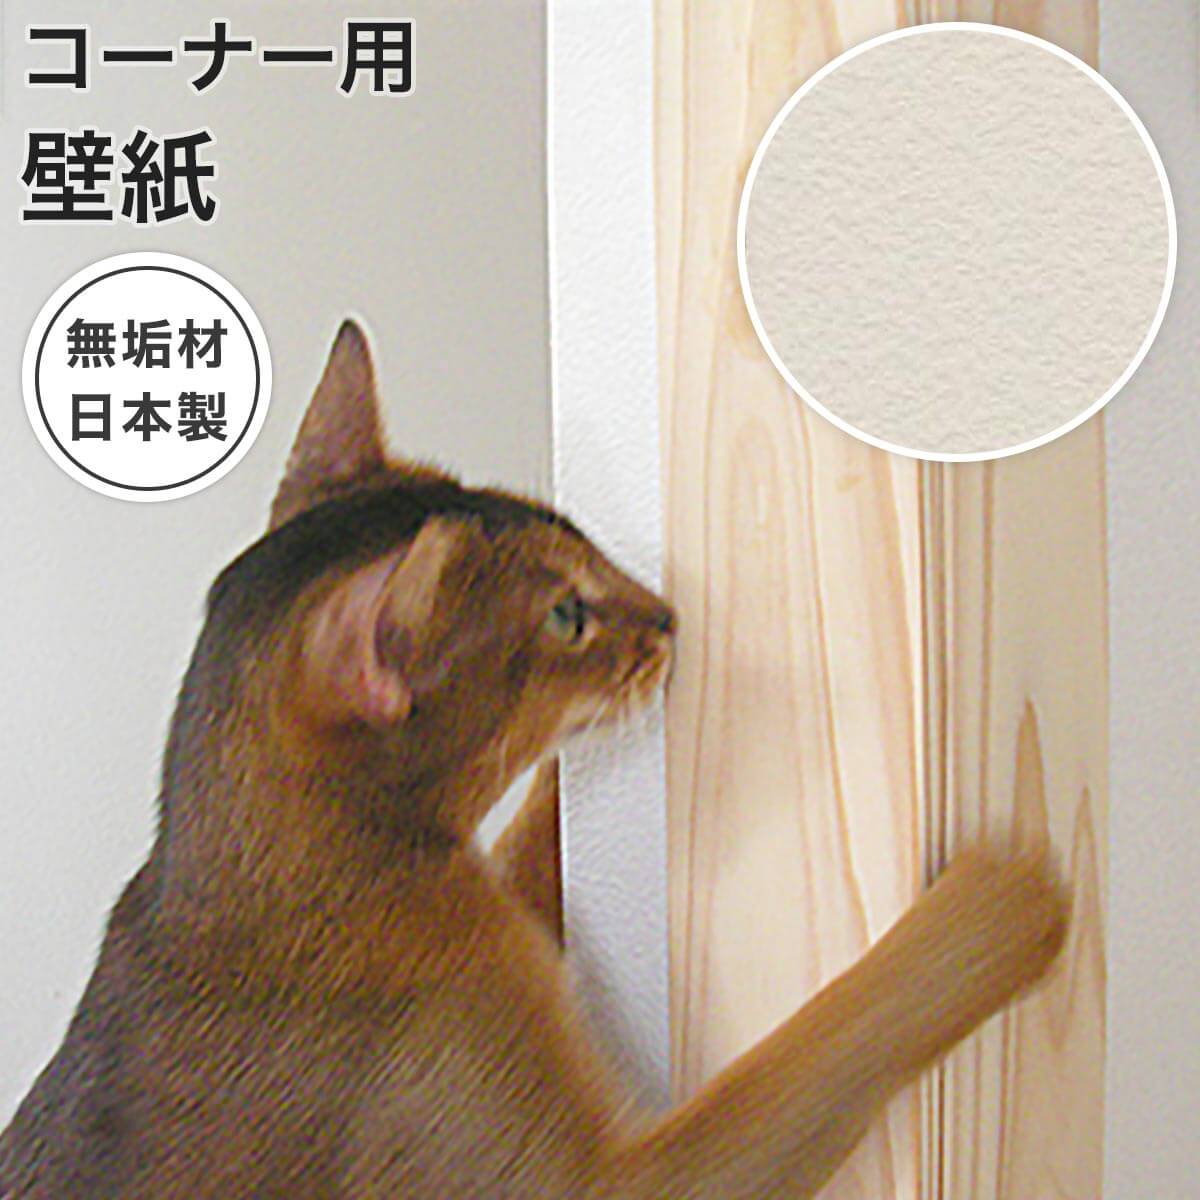 楽天市場 室内用品 壁傷保護 猫用品の通販nekozuki ねこずき